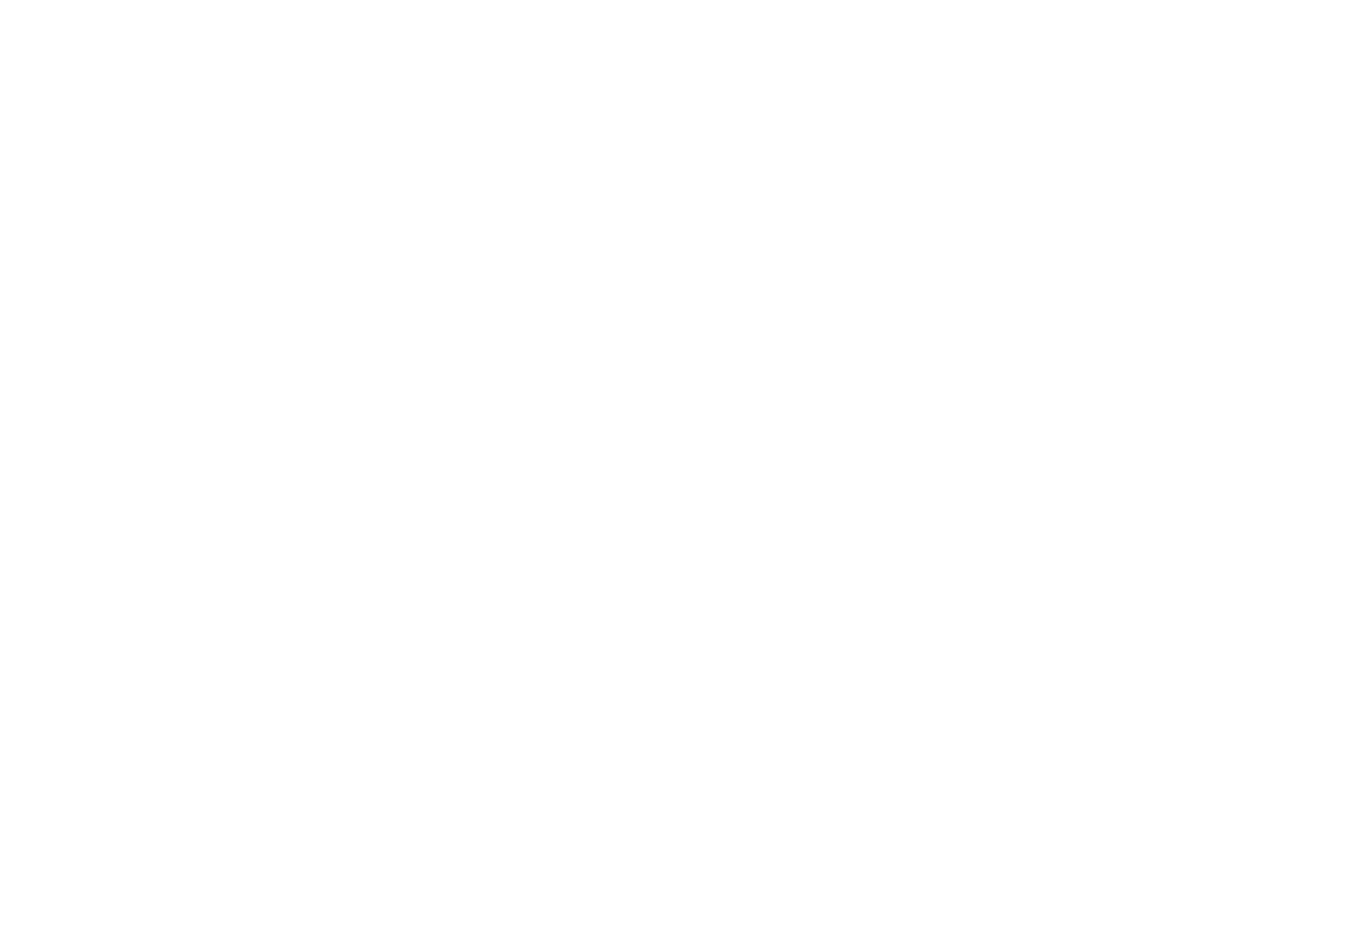 Hello Neighbor - Wikipedia